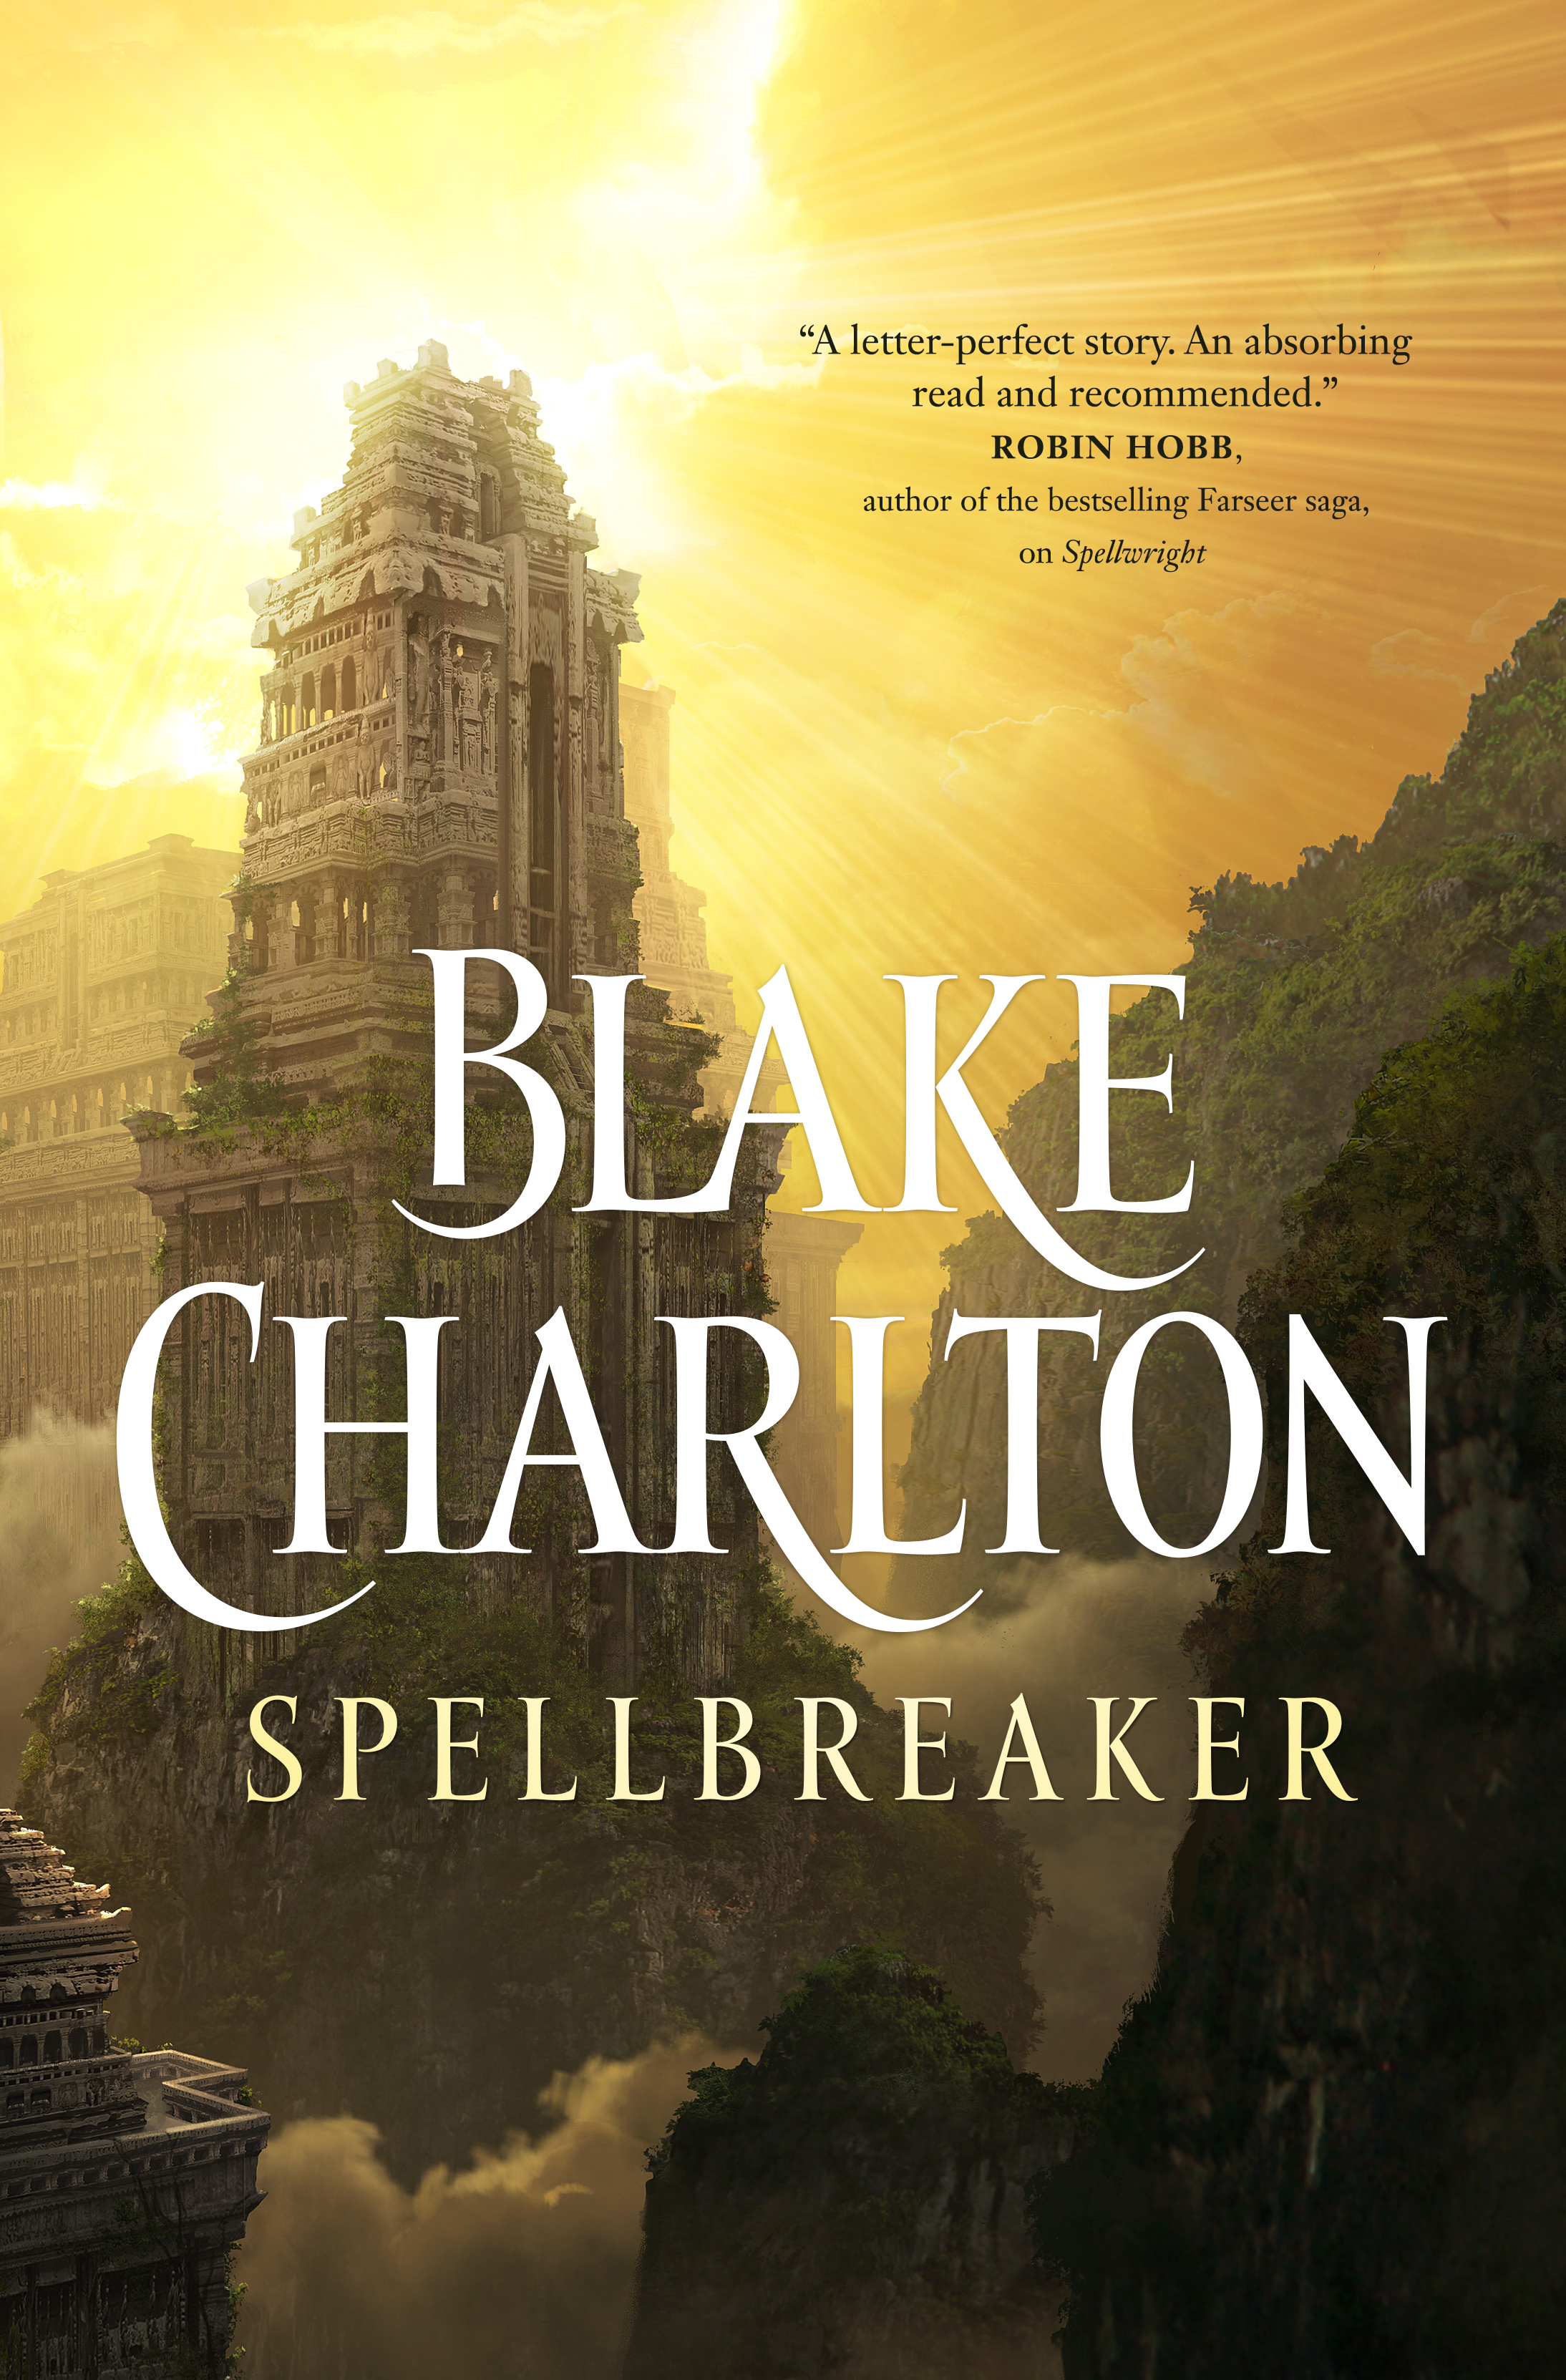 Spellbreaker : A Novel by Blake Charlton